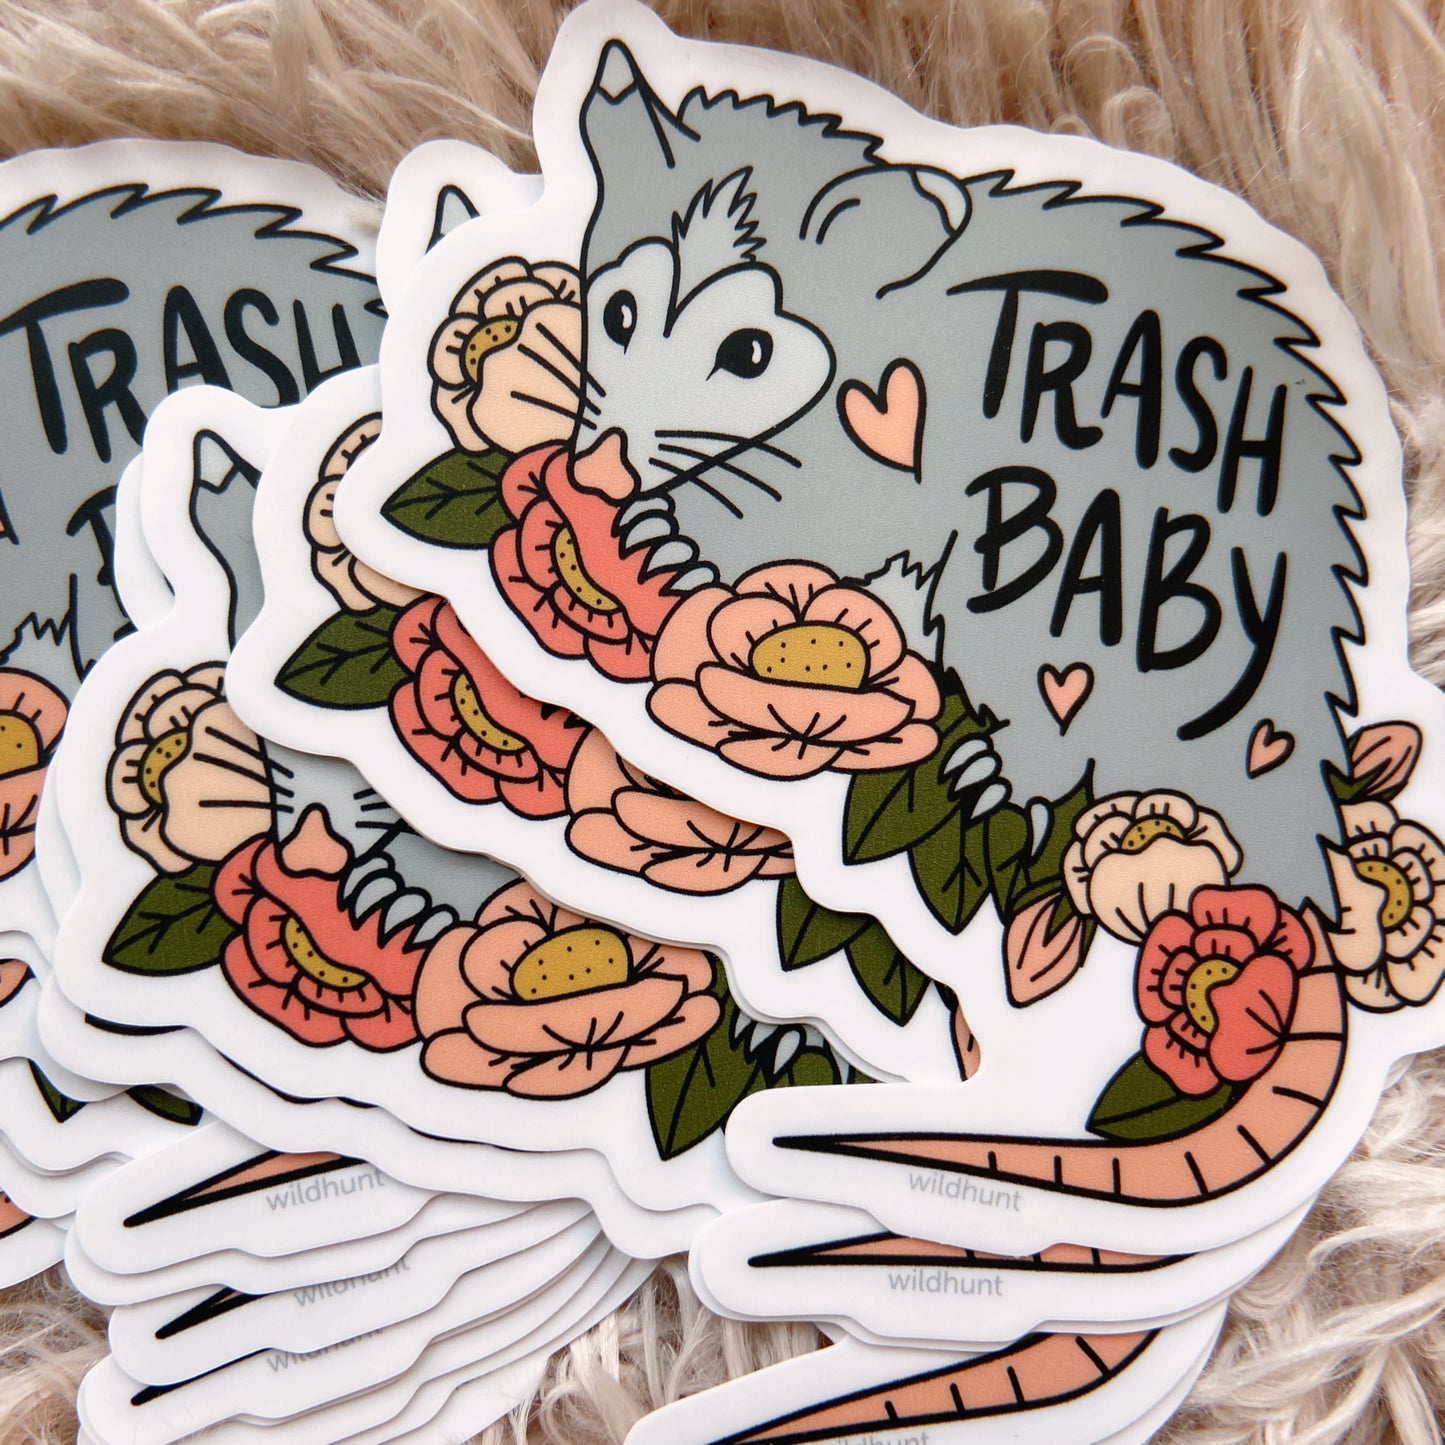 Trash Baby Matte Vinyl Sticker